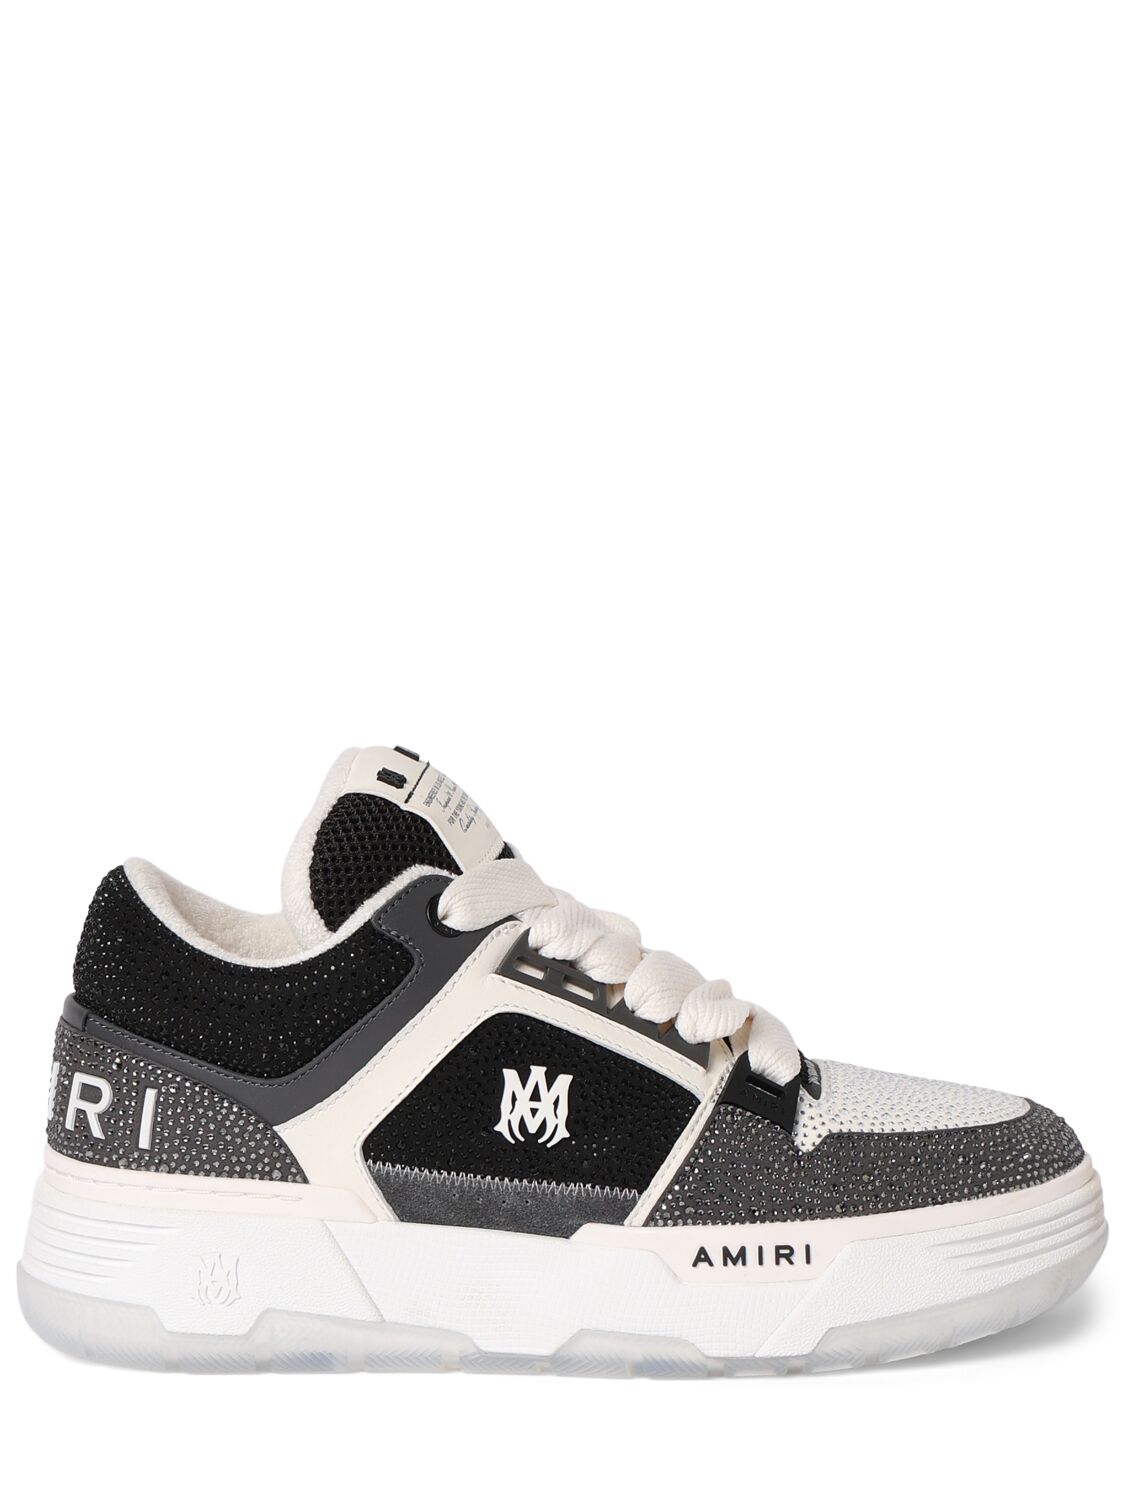 Amiri Ma-1 Crystal Sneakers In Black/white